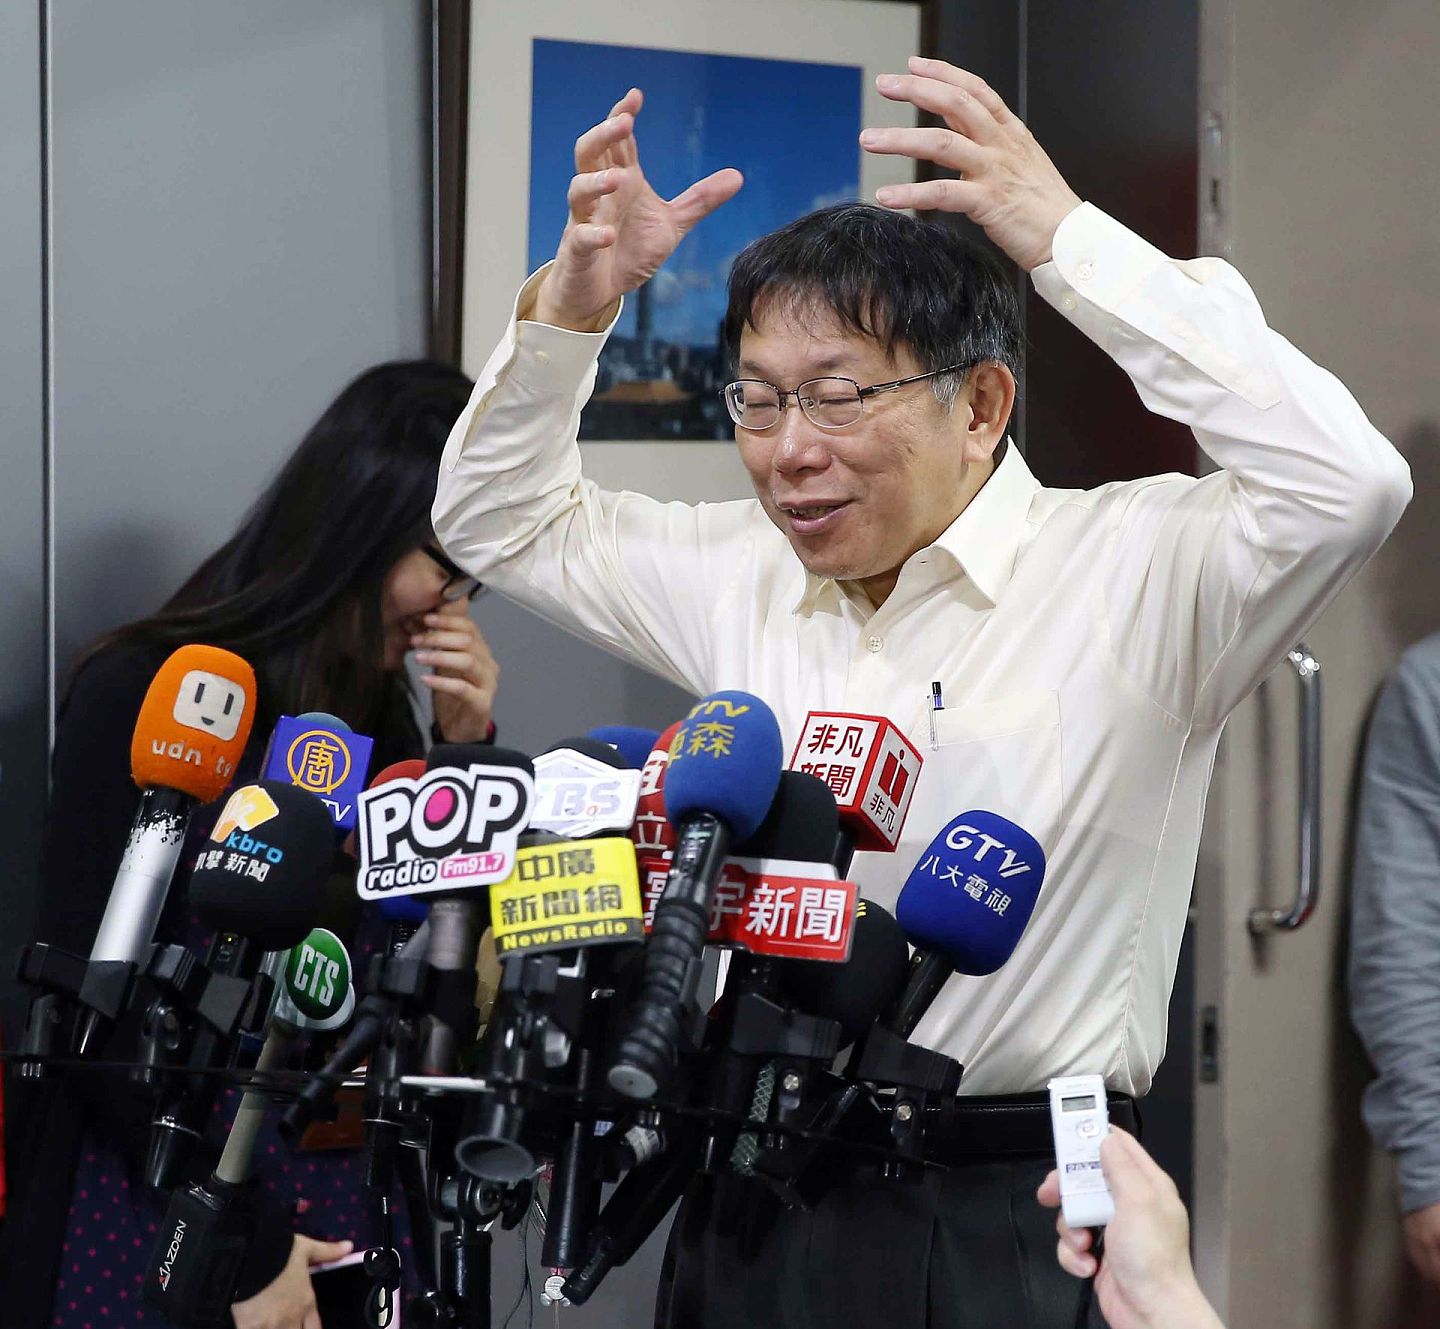 2015年4月1日，台北市长柯文哲表示，“一五新观点”就是一个观点，以前人常说谨言慎行，但他常常是创新；对于大陆国台办“赞赏”字眼，他说“我也不晓得，没什么意见”。（中央社）